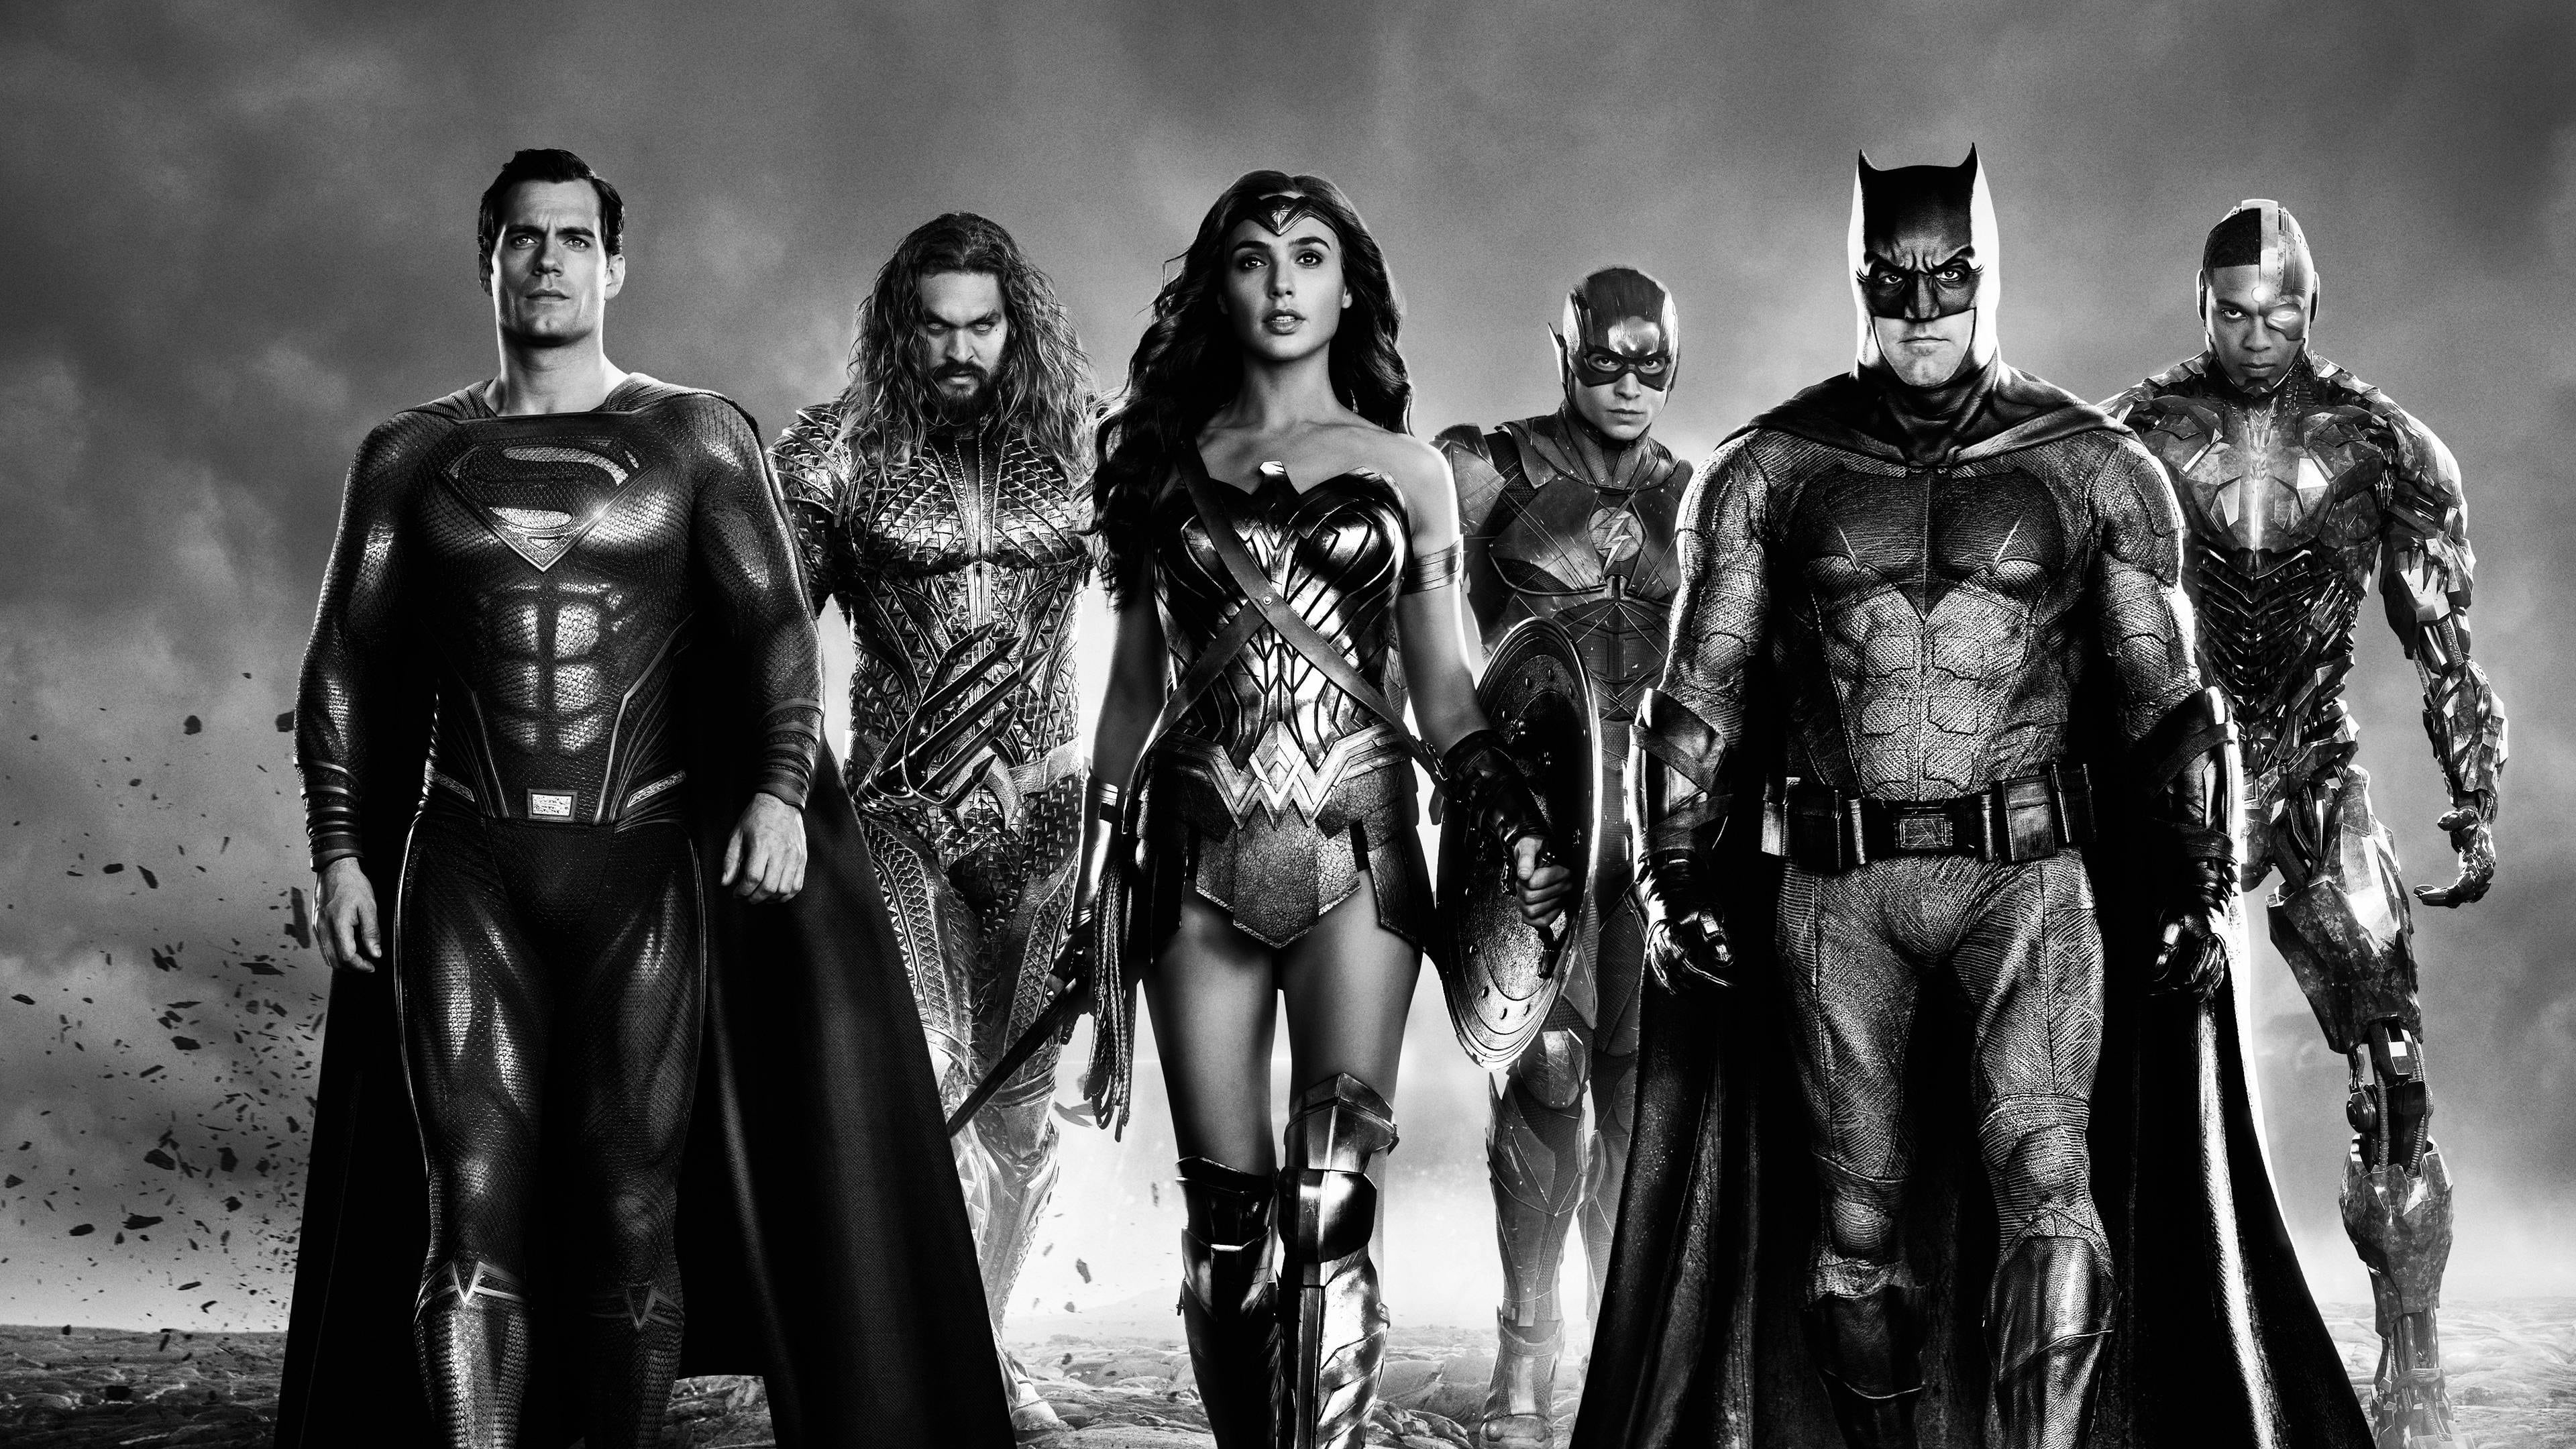 จัสติซ ลีก แซ็ค สไนเดอร์ Zack Snyder's Justice League ออนไลน์โดยสมบูรณ์ในปี 2021